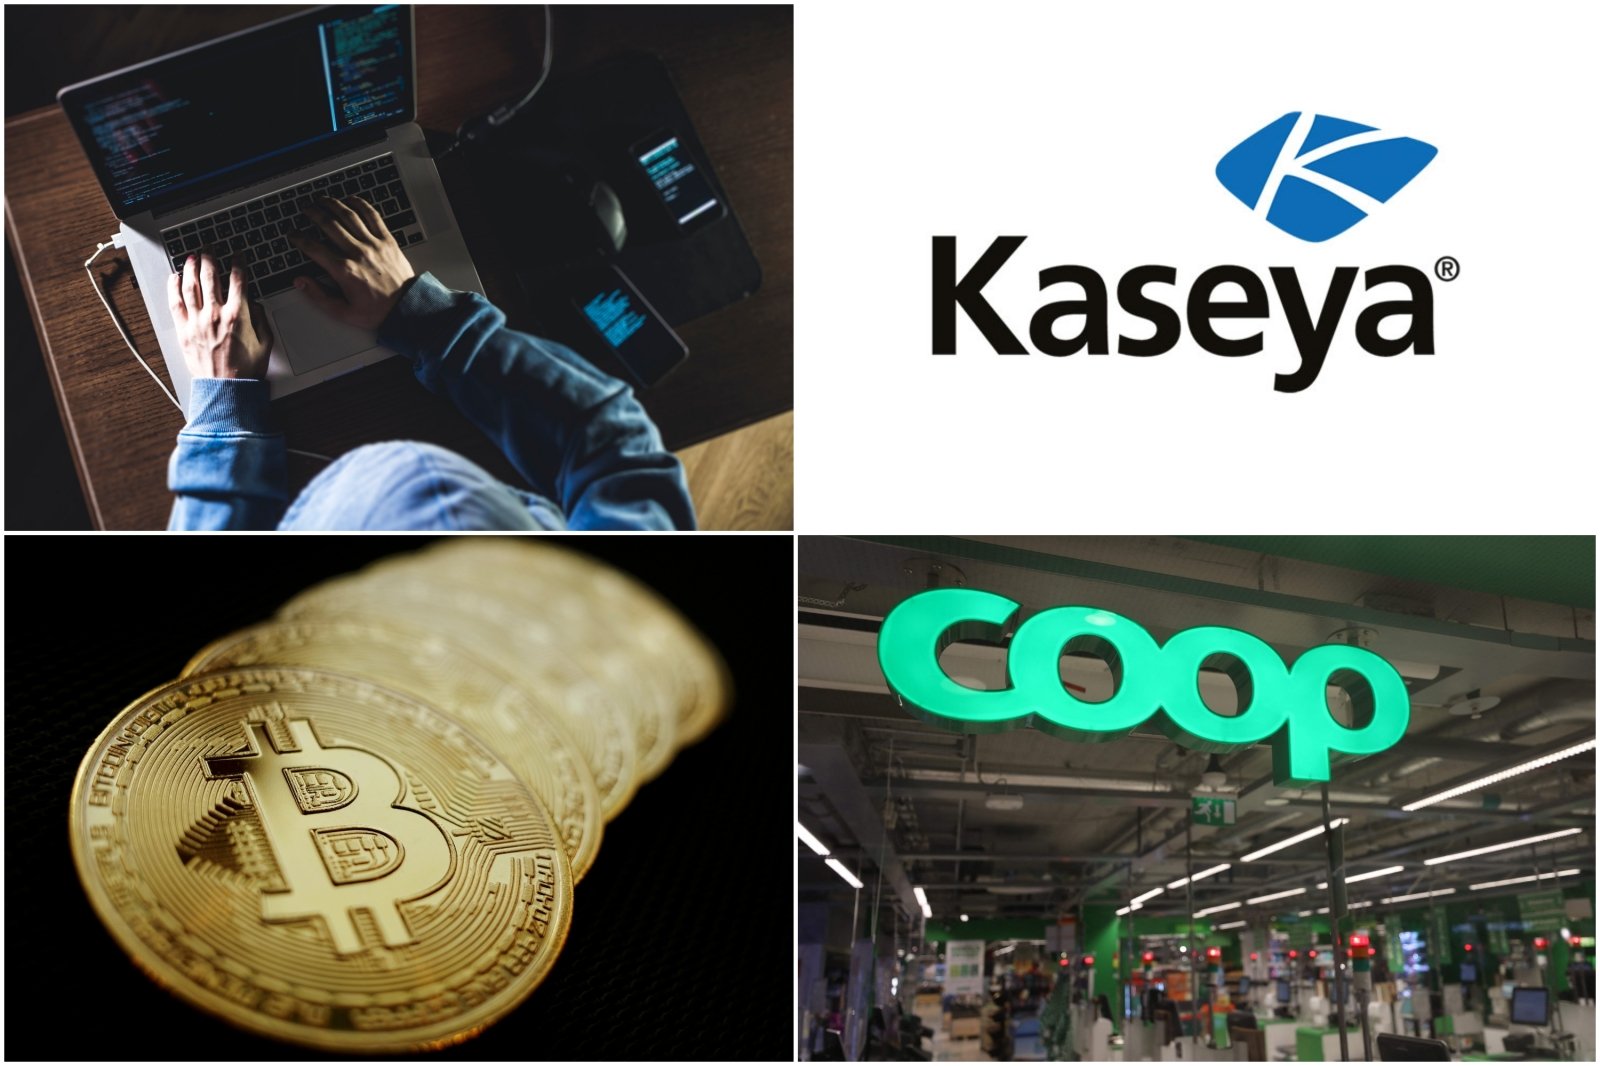 Prekybos bitkoinais programa geriausia kriptovaliuta investicijoms